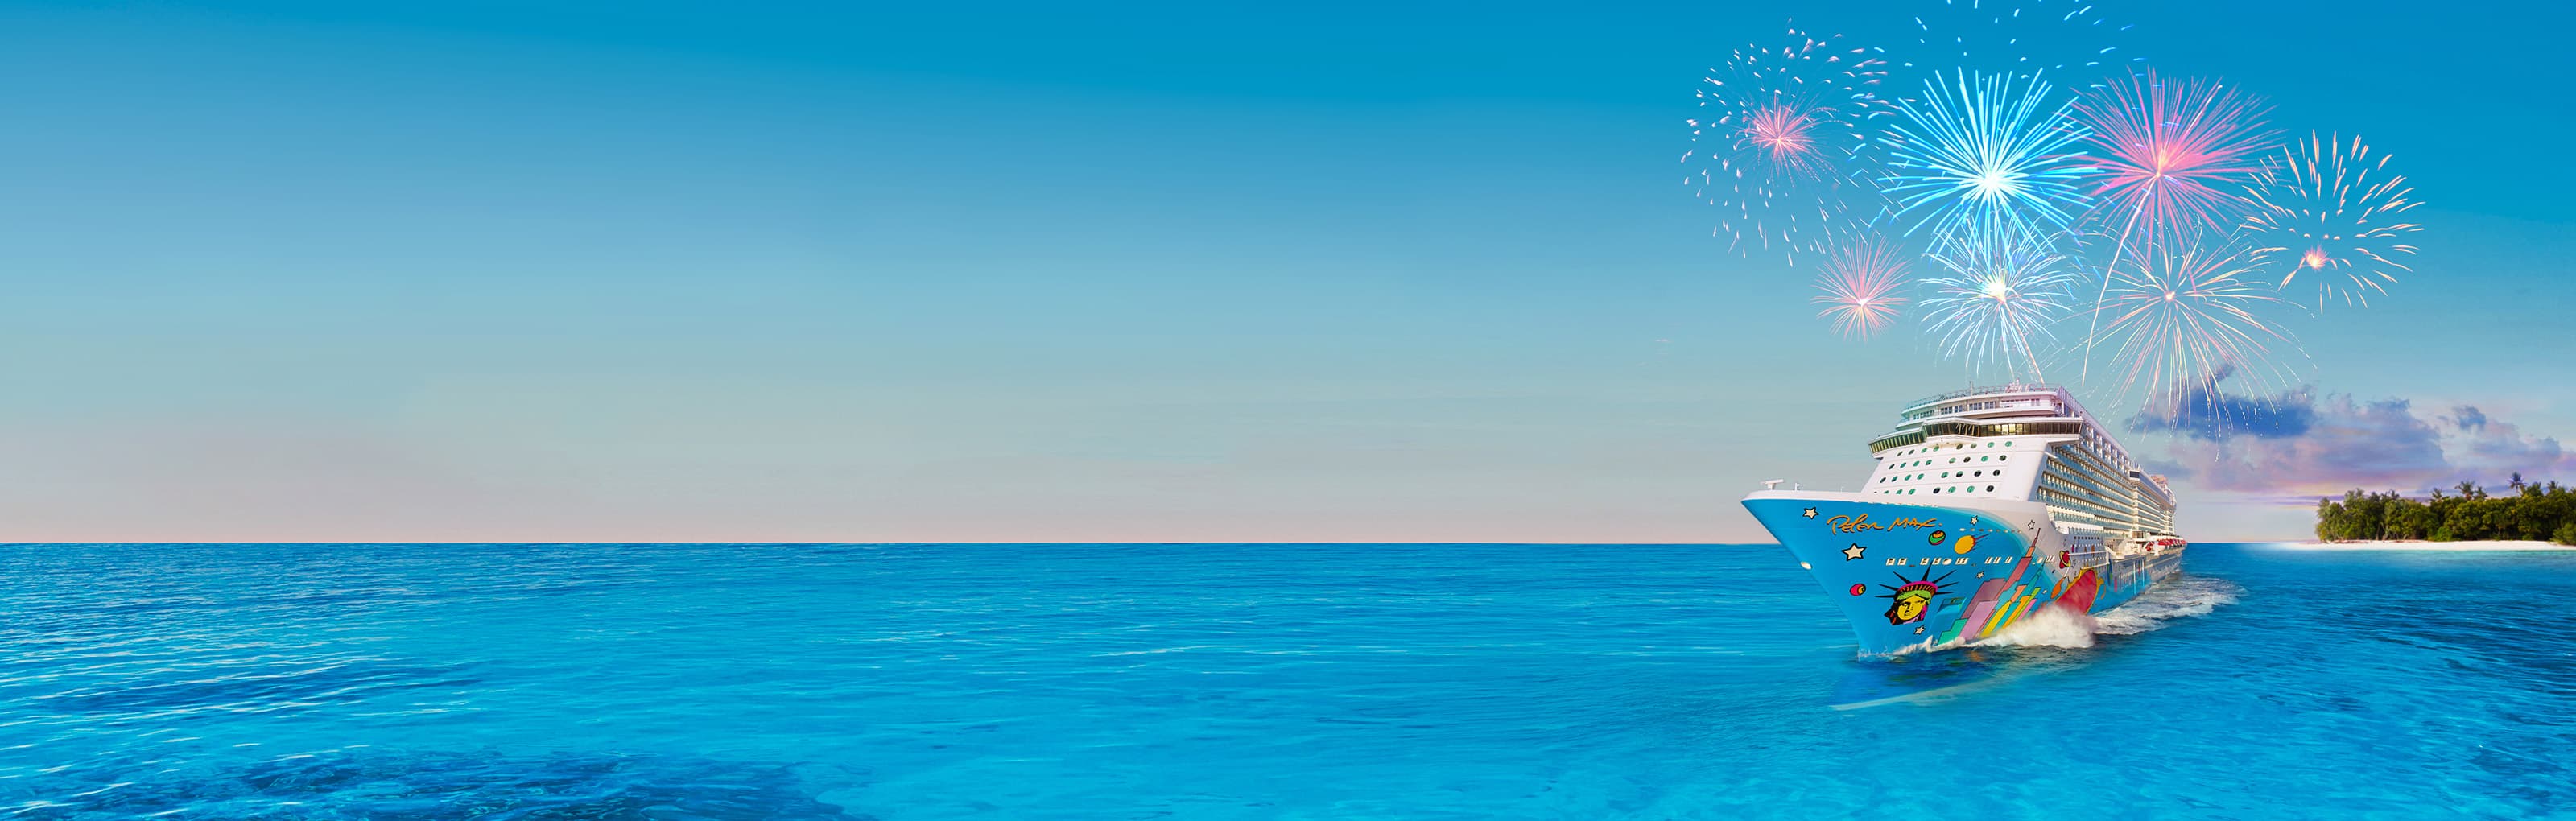 Navio de cruzeiro em oceano azul e ao fundo vista de ilha privativa com fogos de artifício